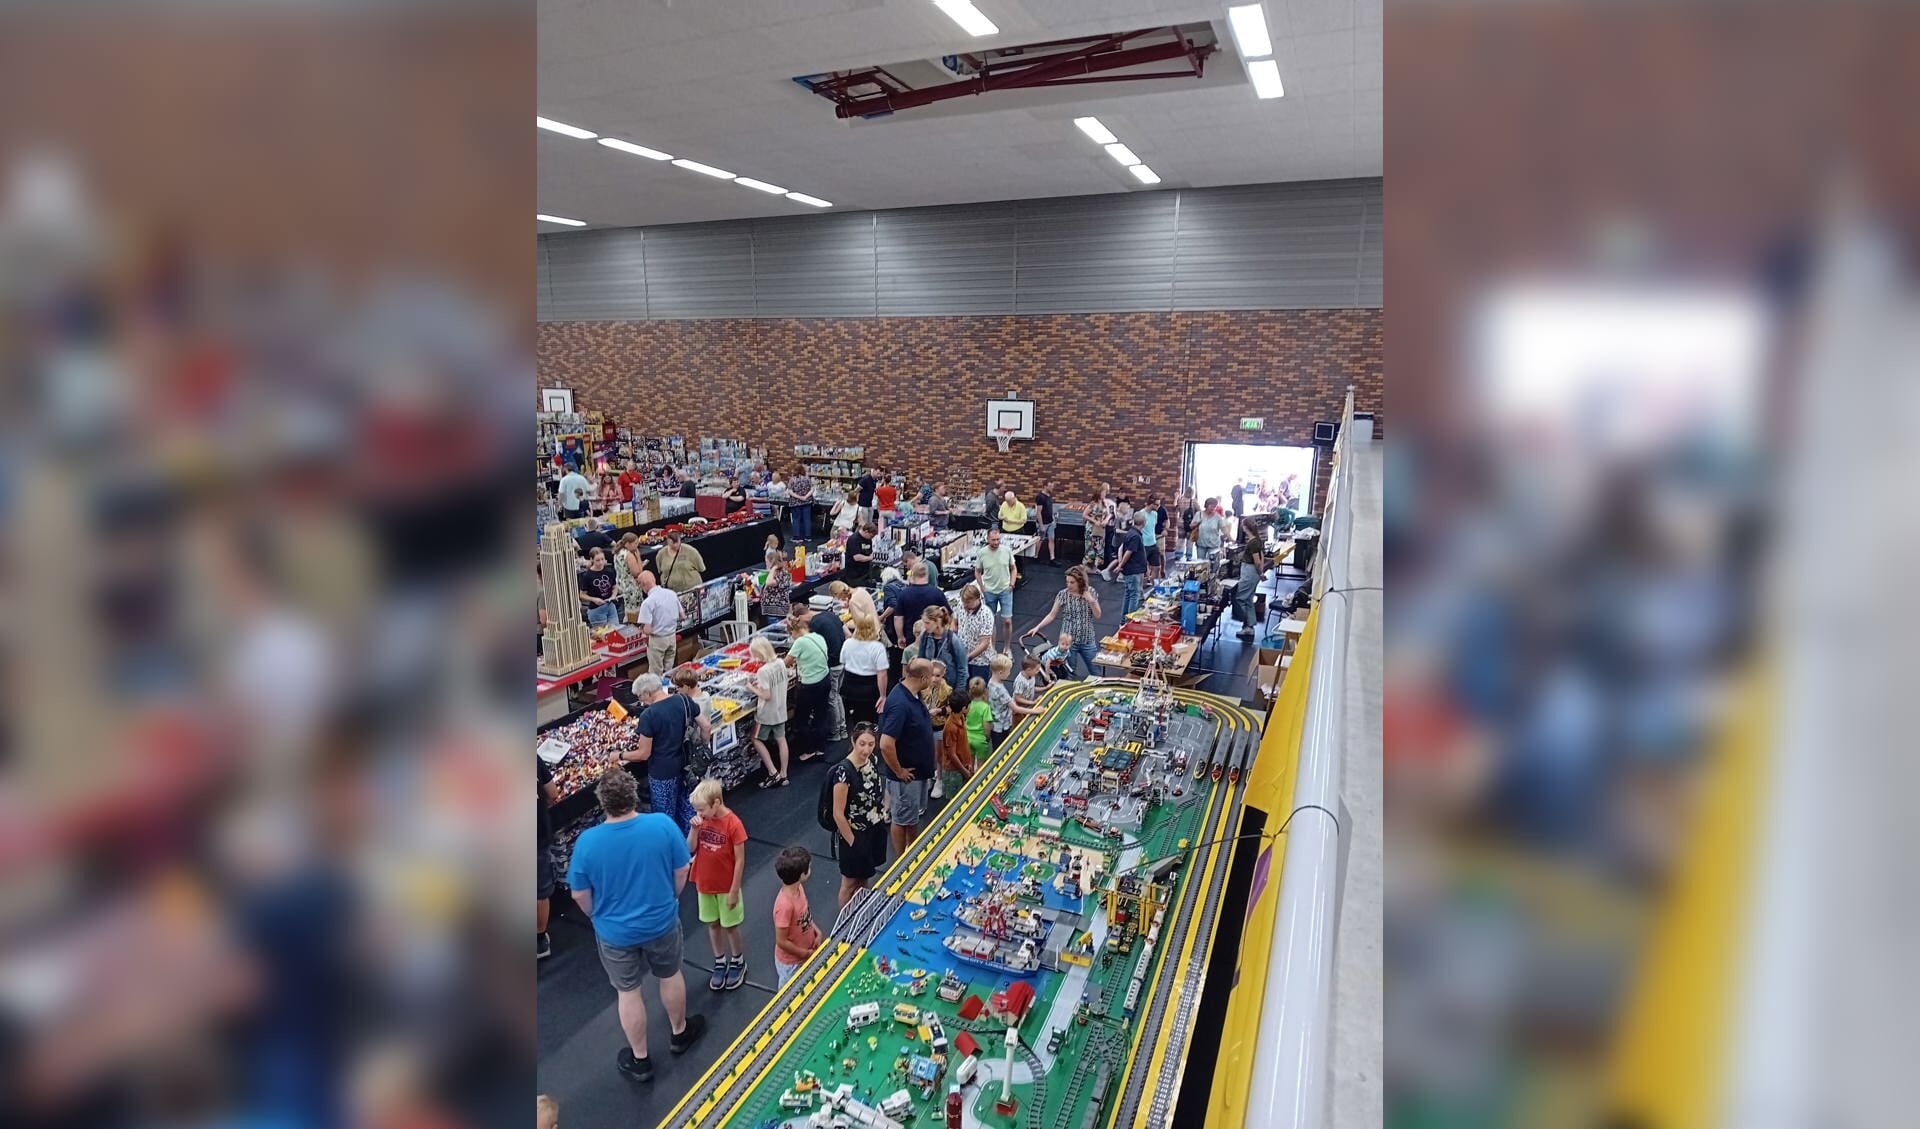 Tijdens Zomerbricks genoten al veel bezoekers van de gigantische bouwwerken en overweldigende hoeveelheid Legostenen in het Ravijn.